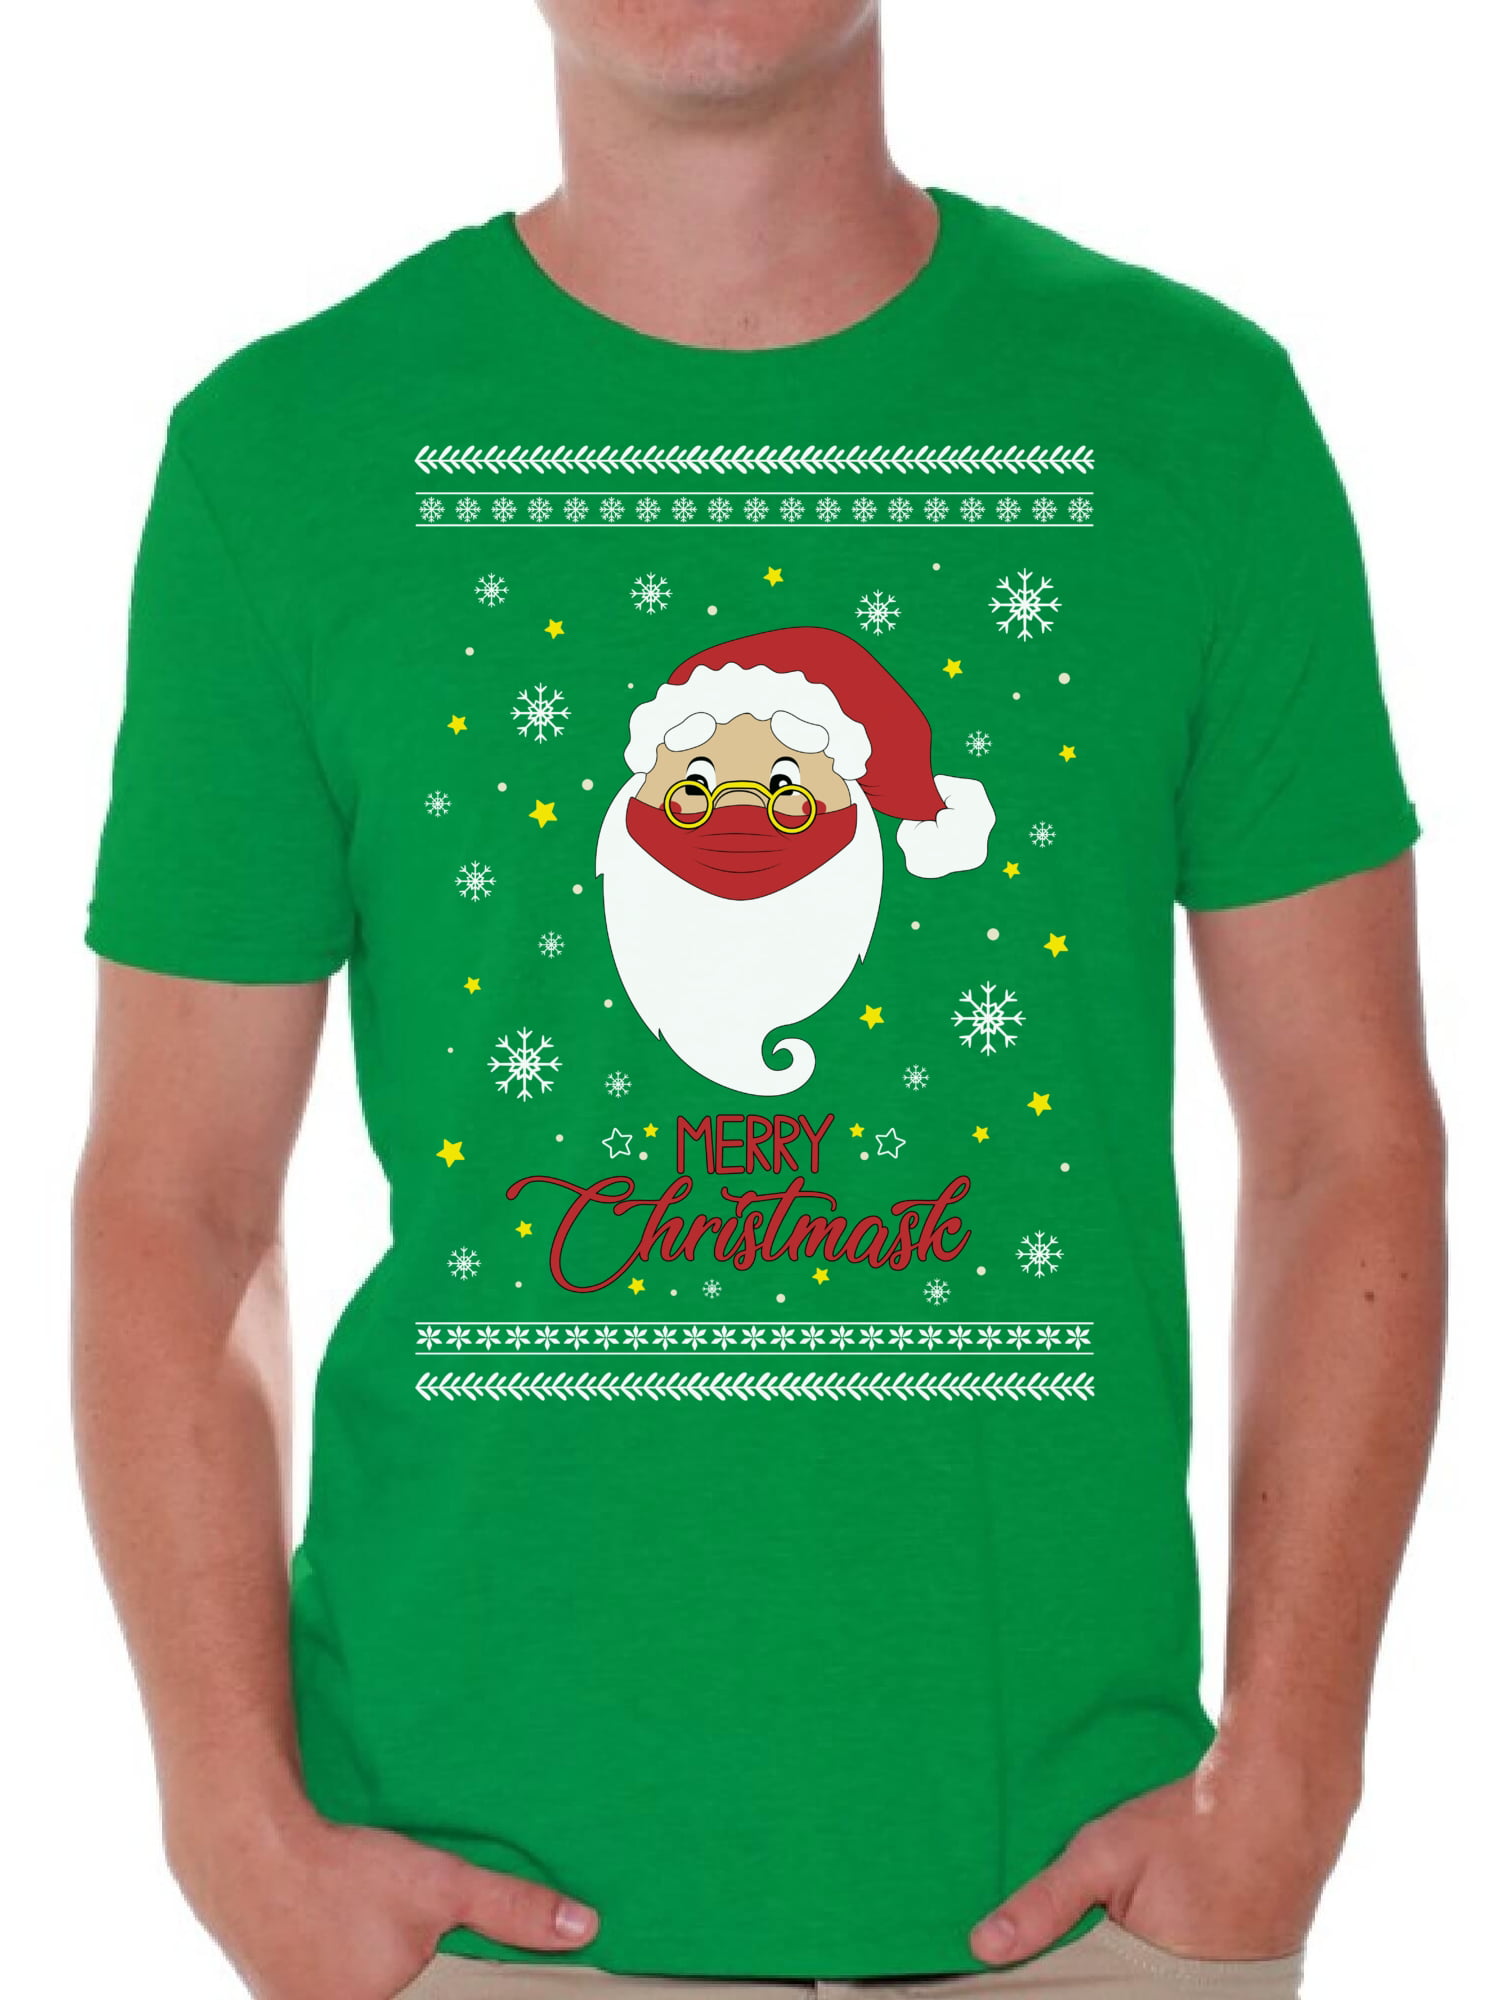 Xmas Eve Christmas Shirt for Women Mens Christmas Shirt Santa Claus H20 H2o H2o Shirt Funny Christmas Shirt T-Shirt